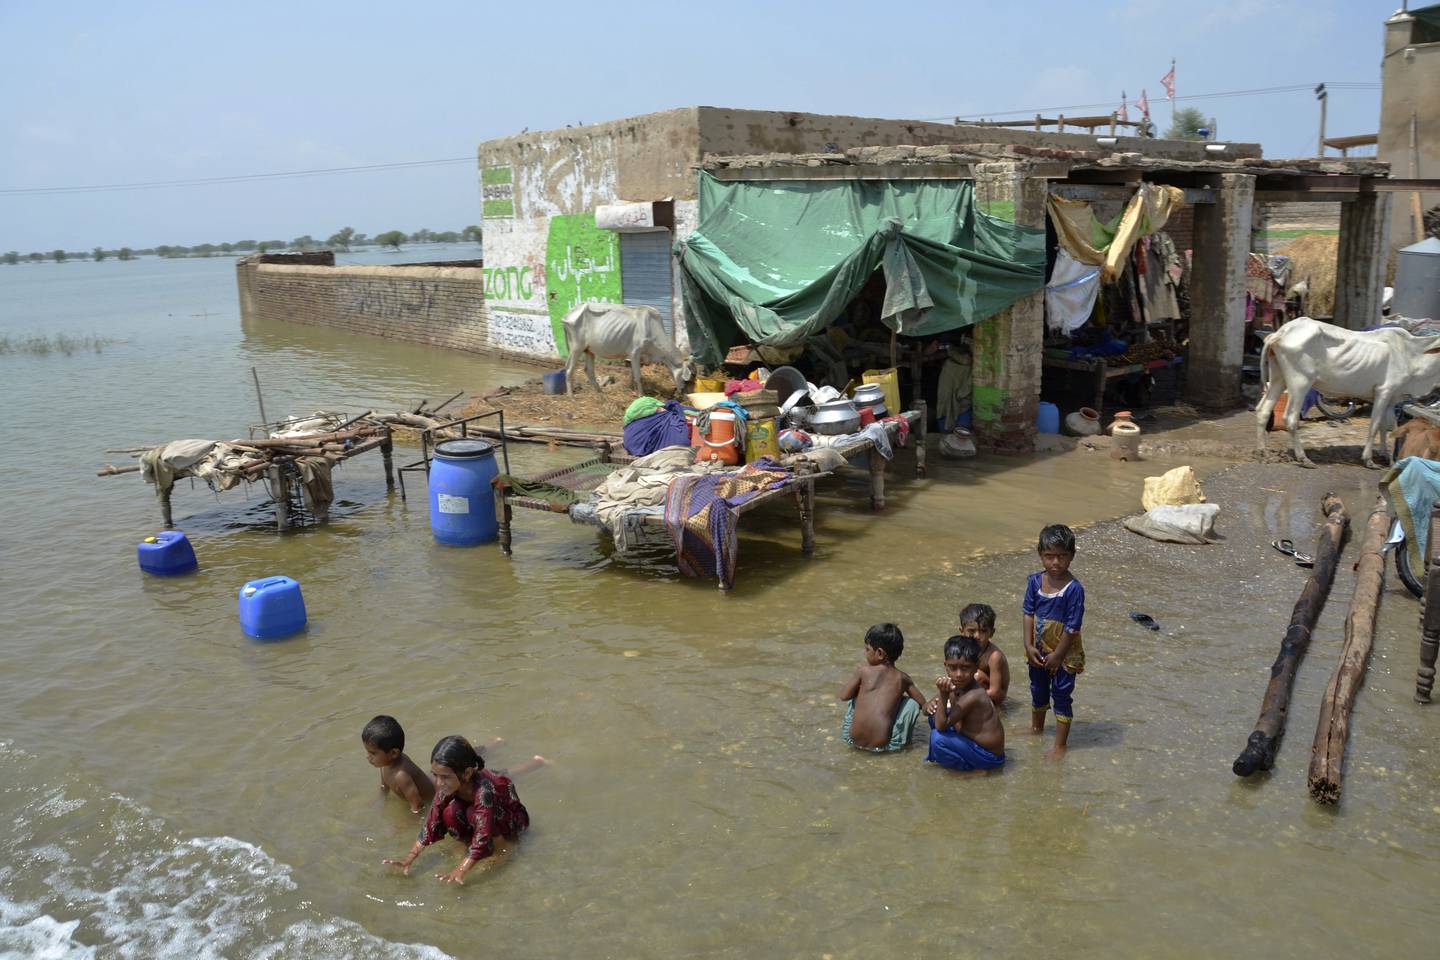 Millioner av pakistanere lever nå med vann til knærne. Monsunregnet kom tidlig og var langt kraftigere enn normalt, og mer regn er snart i vente. Foto: AP / NTB